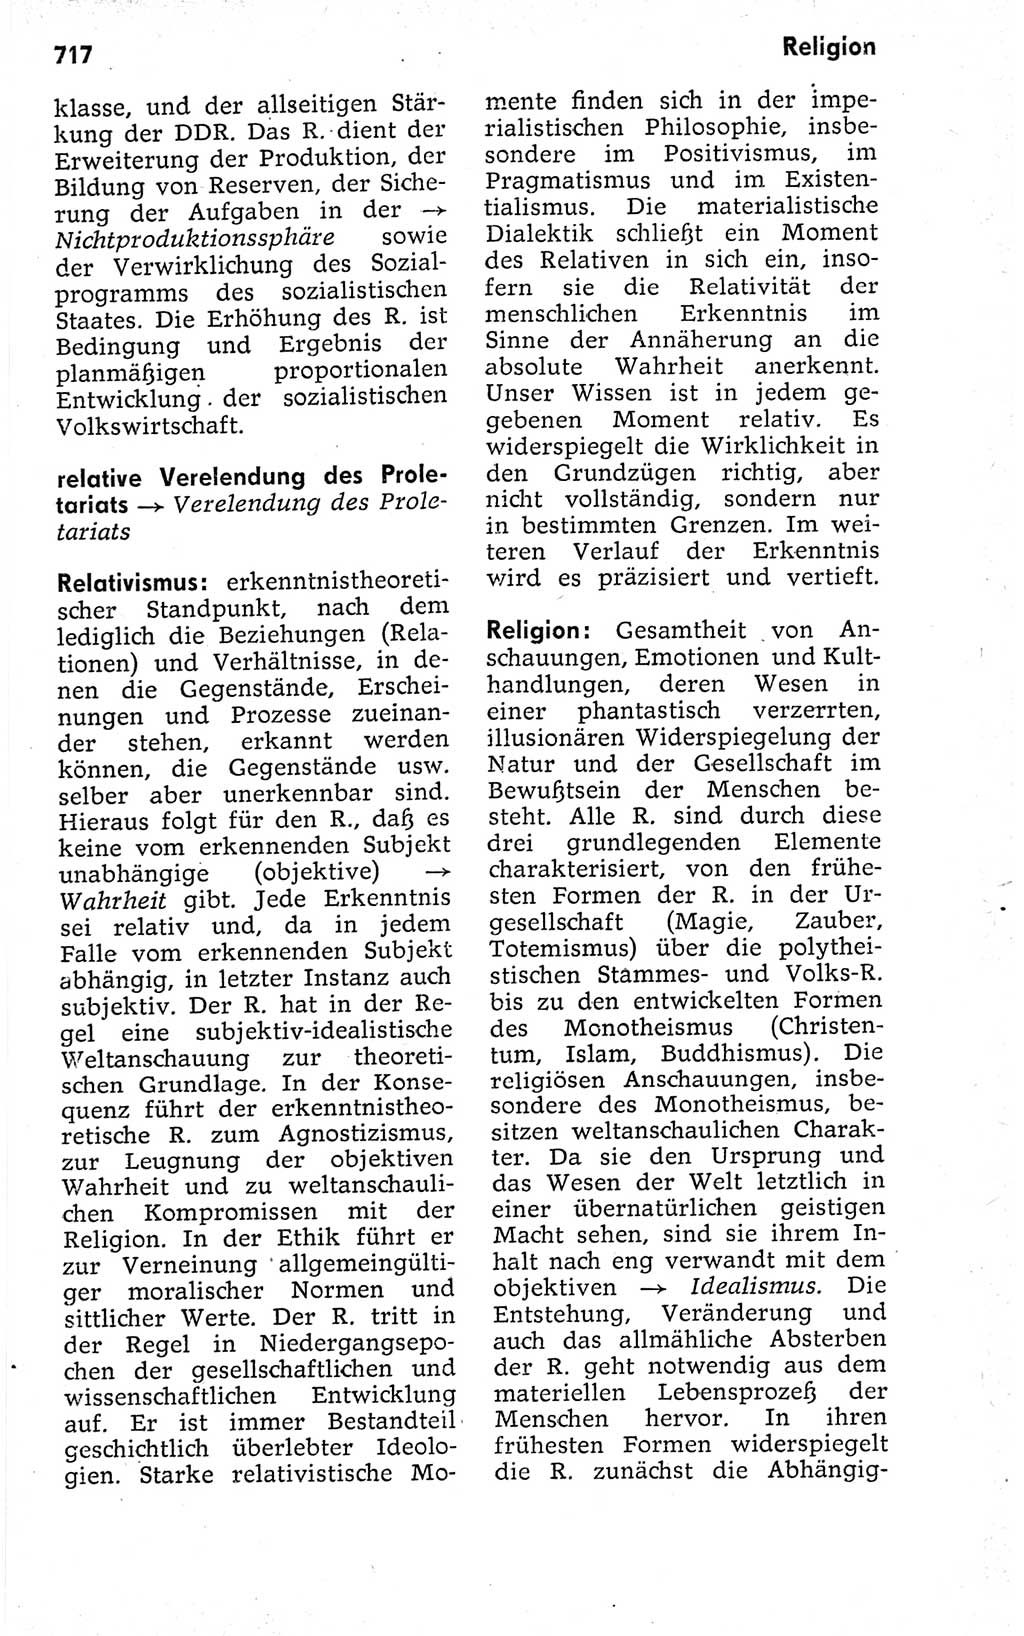 Kleines politisches Wörterbuch [Deutsche Demokratische Republik (DDR)] 1973, Seite 717 (Kl. pol. Wb. DDR 1973, S. 717)